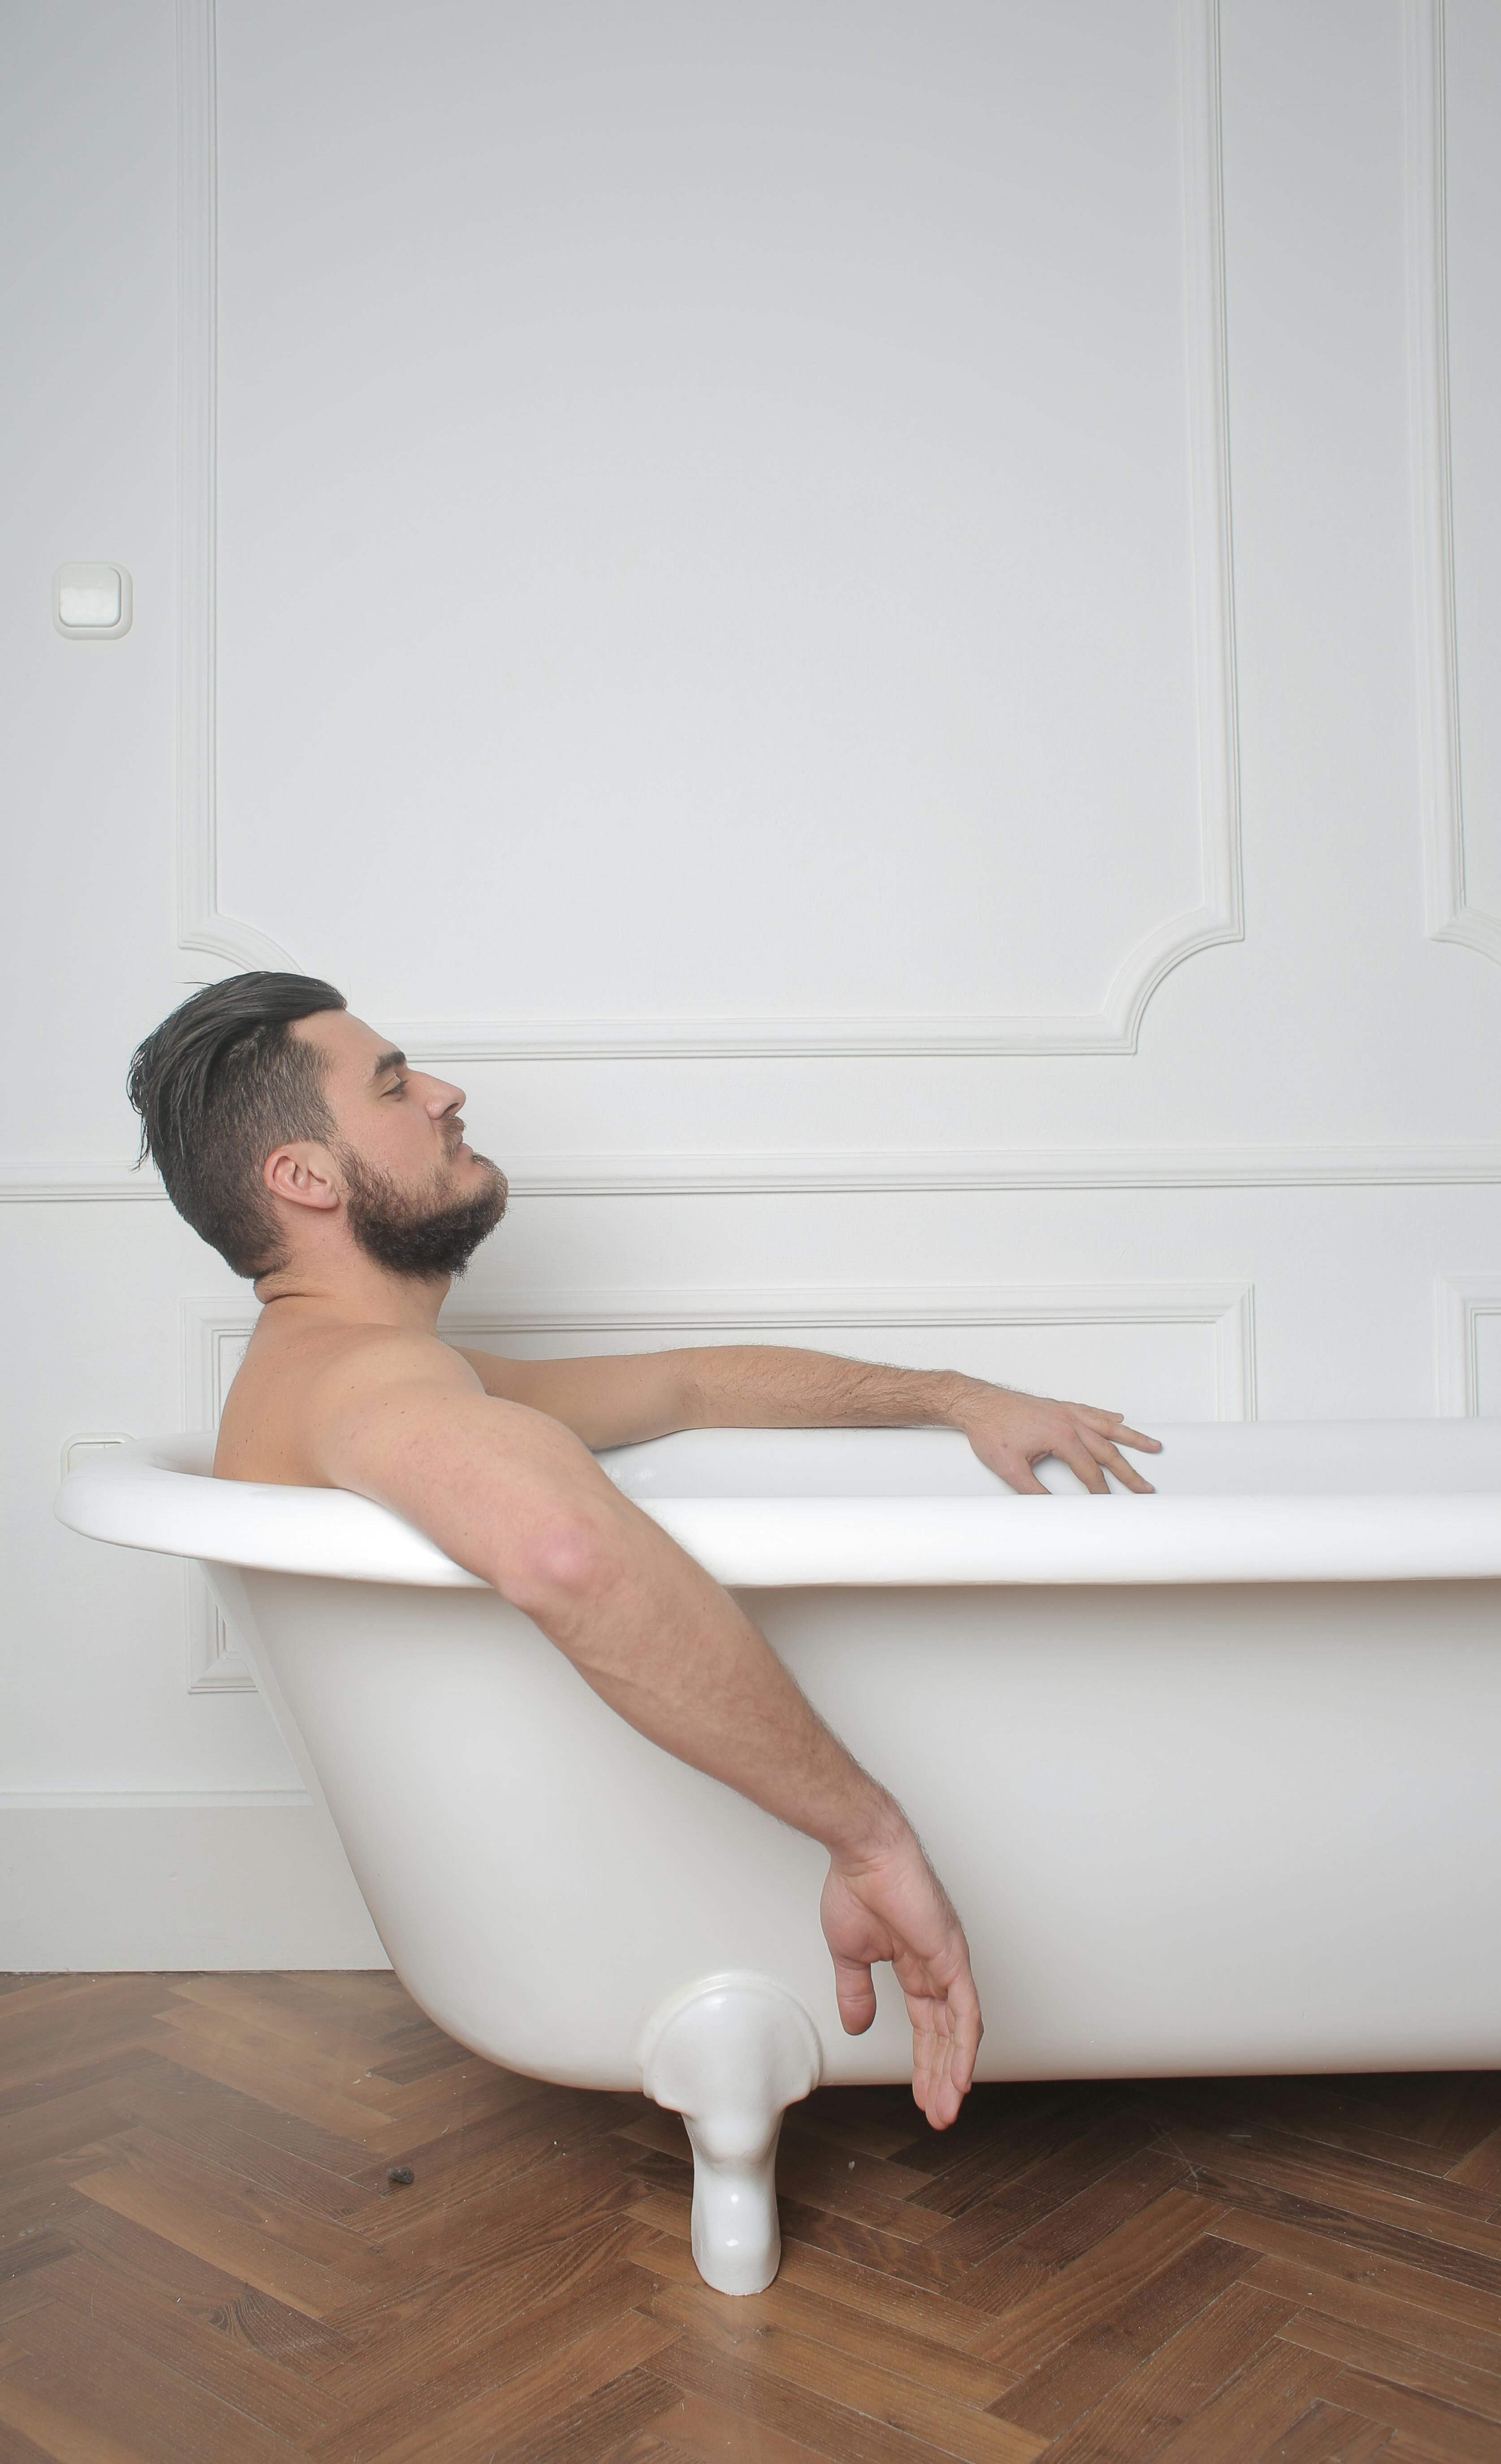 Foto De Stock Gratuita Sobre Adulto Bañándose Bañera